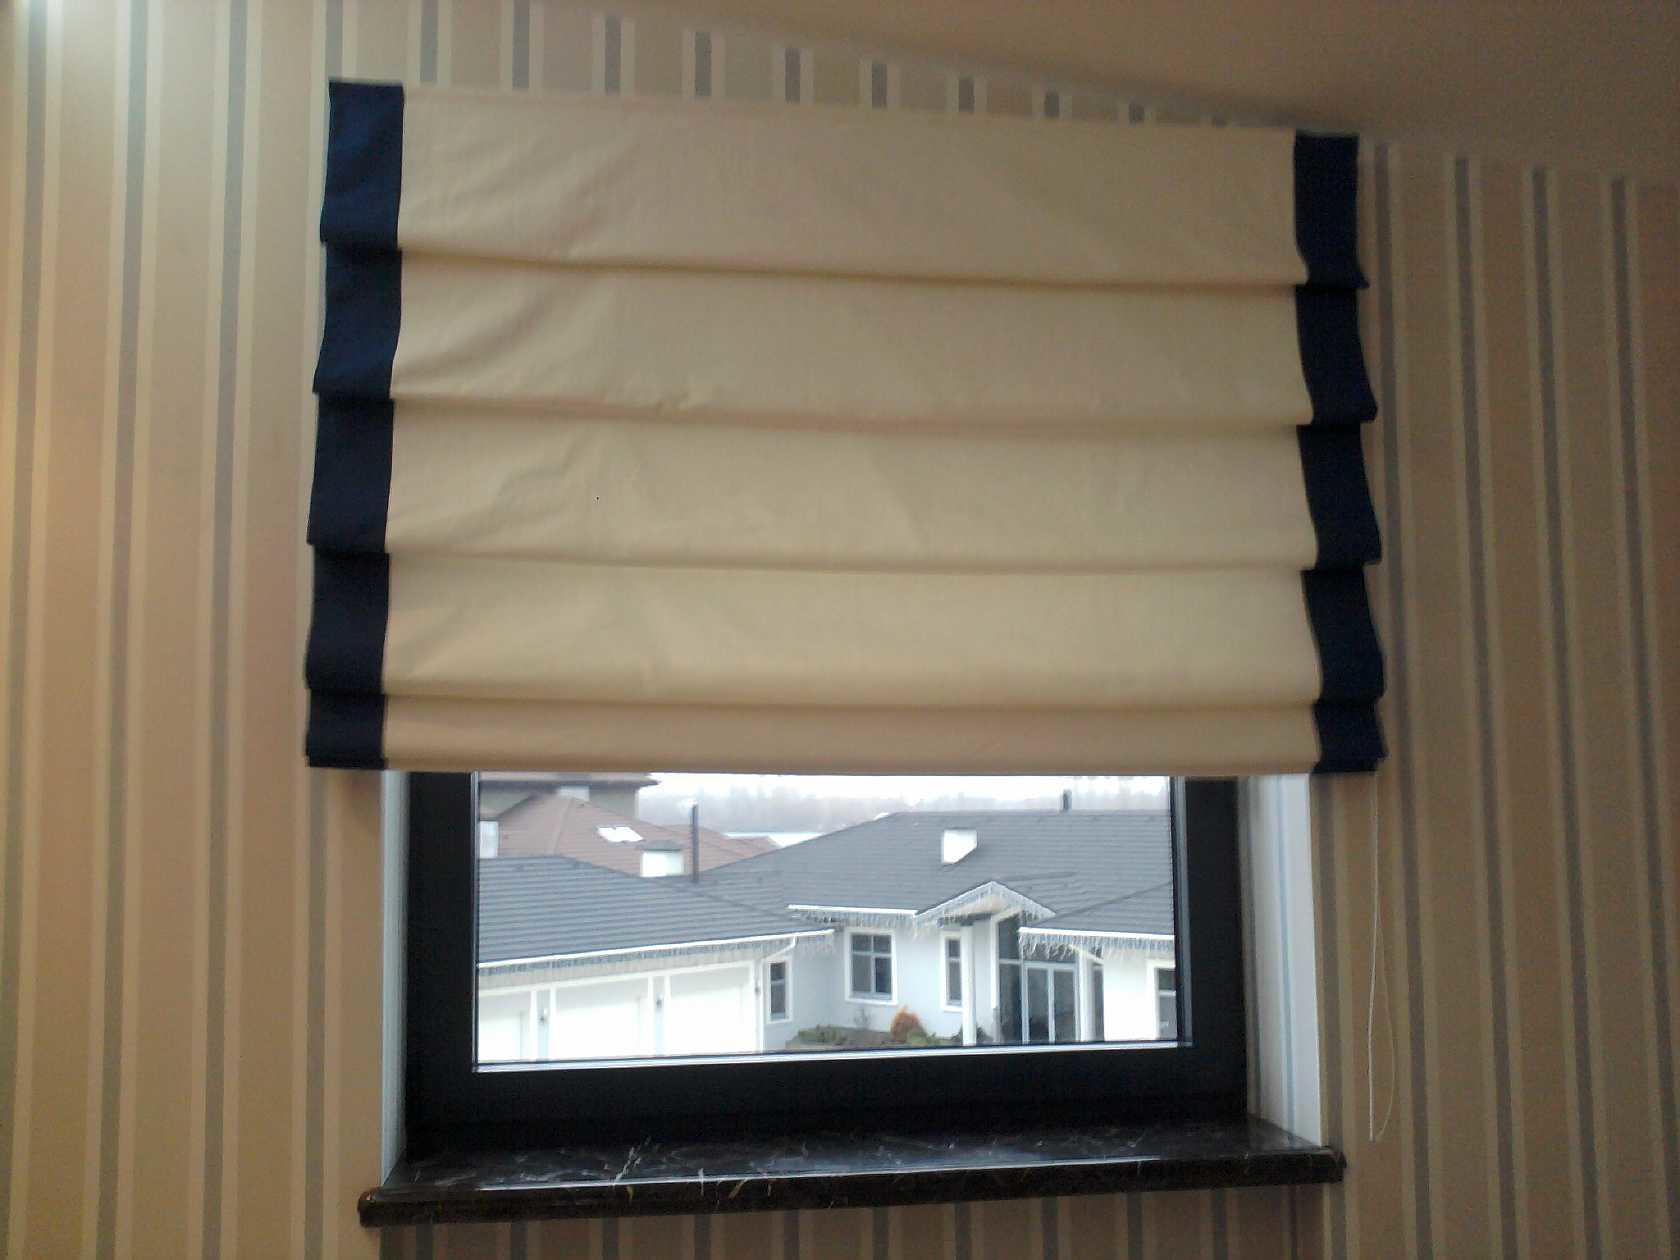 Ширина шторы должна быть больше ширины оконного проема на 2-4 сантиметра